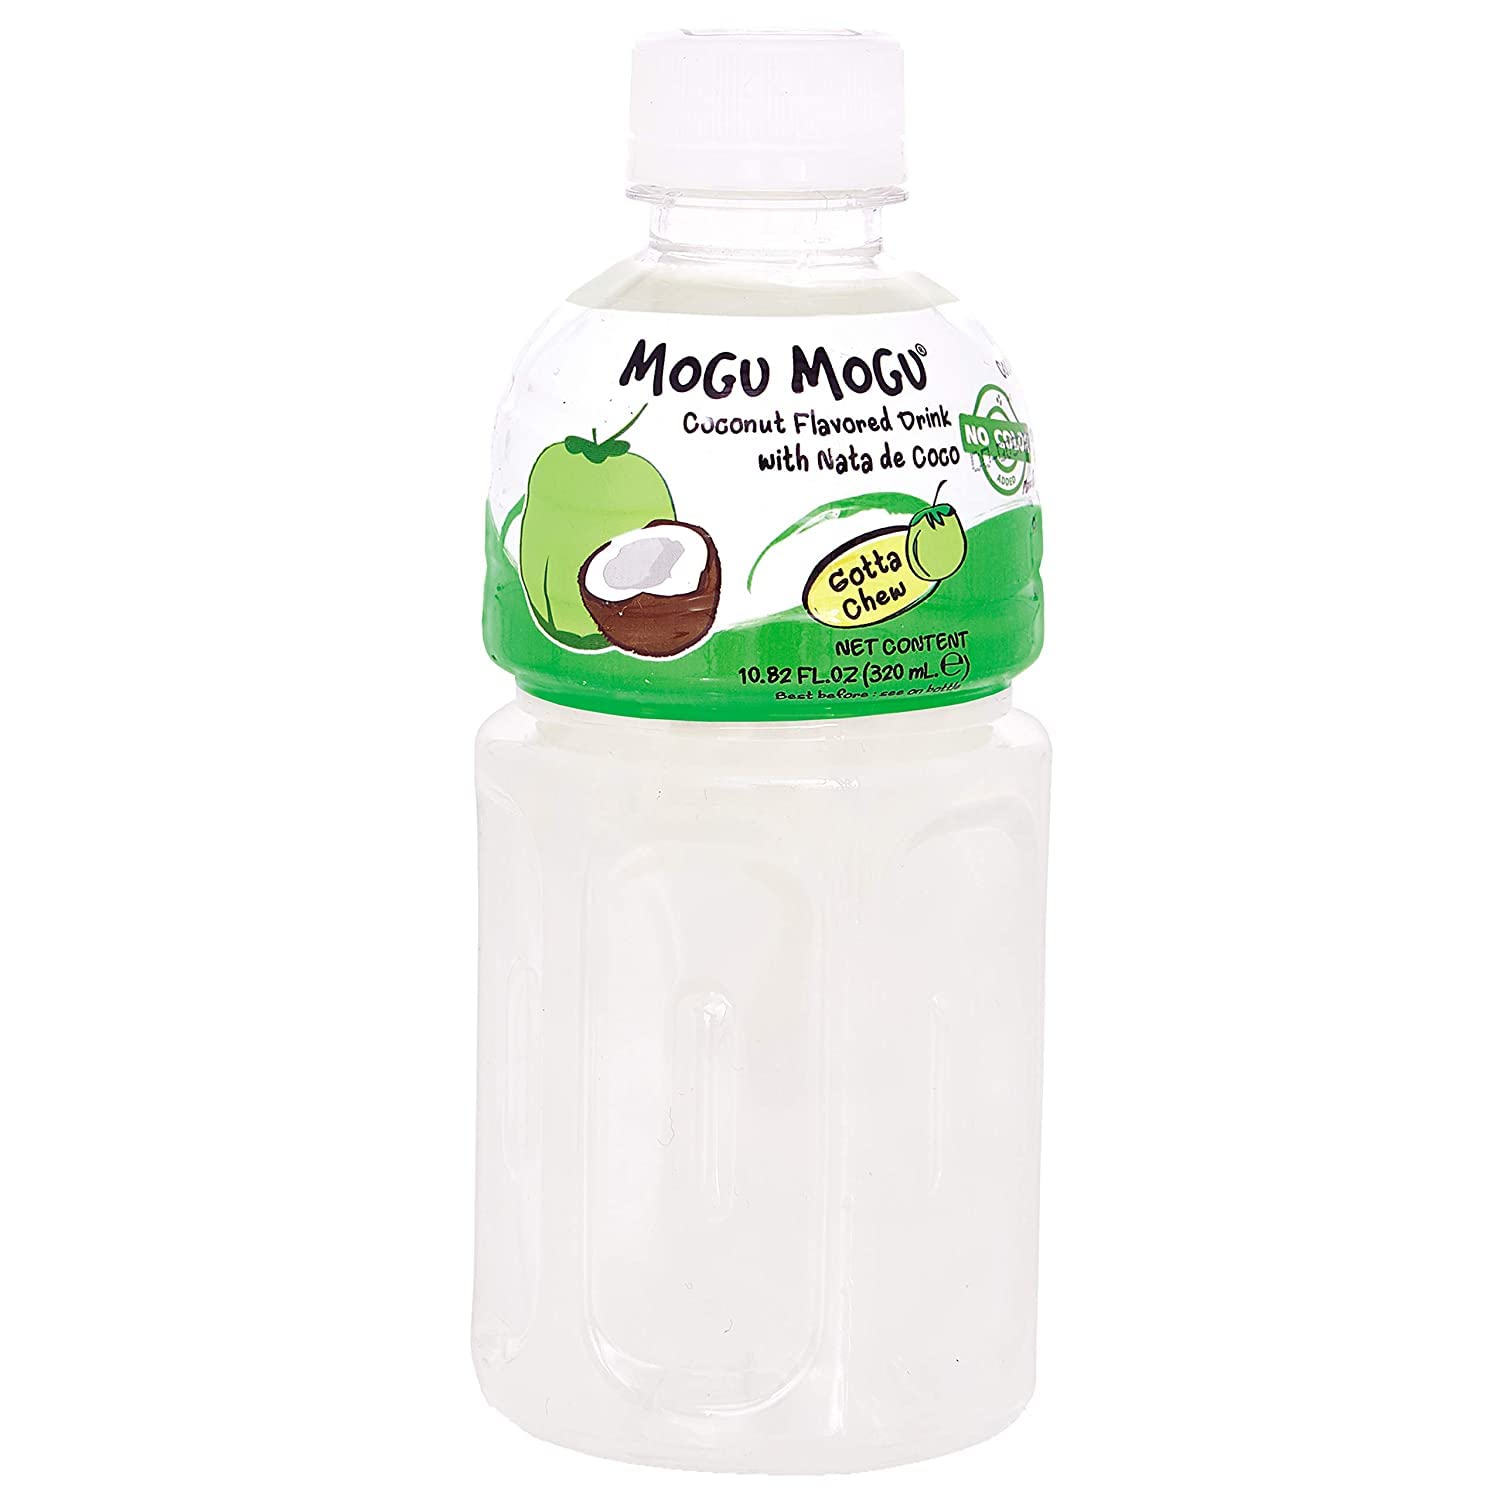 Mogu Mogu Coconut Flavored Drink with Nata de Coco 320ml